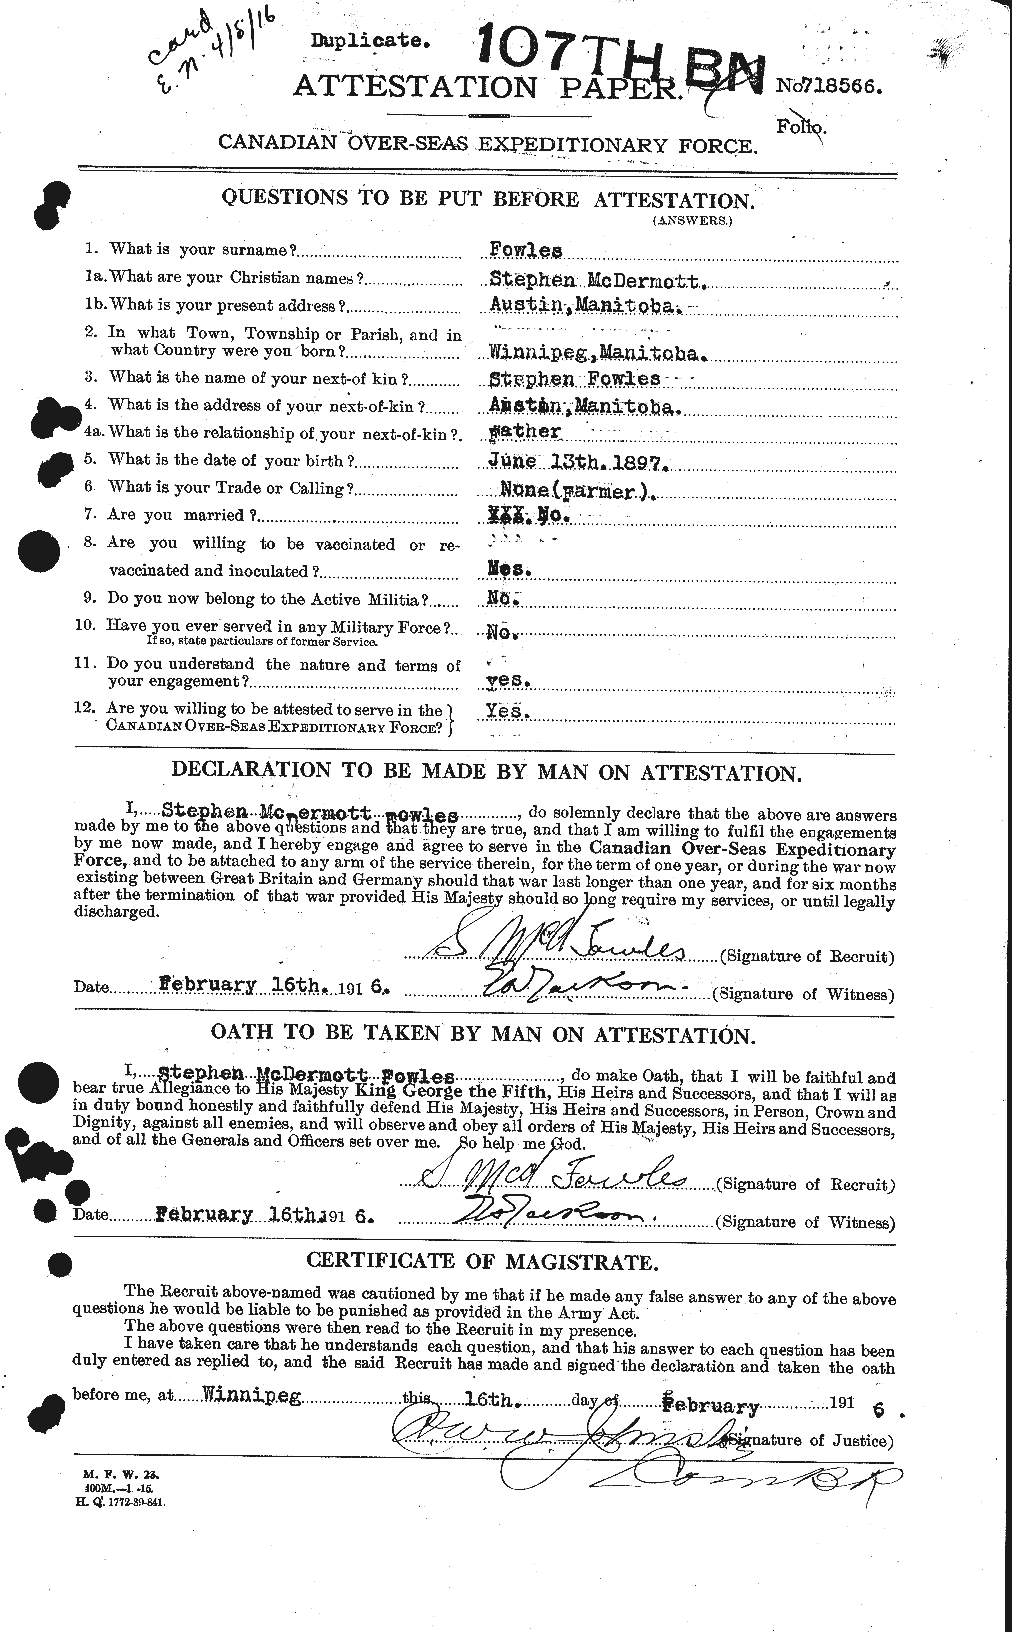 Dossiers du Personnel de la Première Guerre mondiale - CEC 338647a